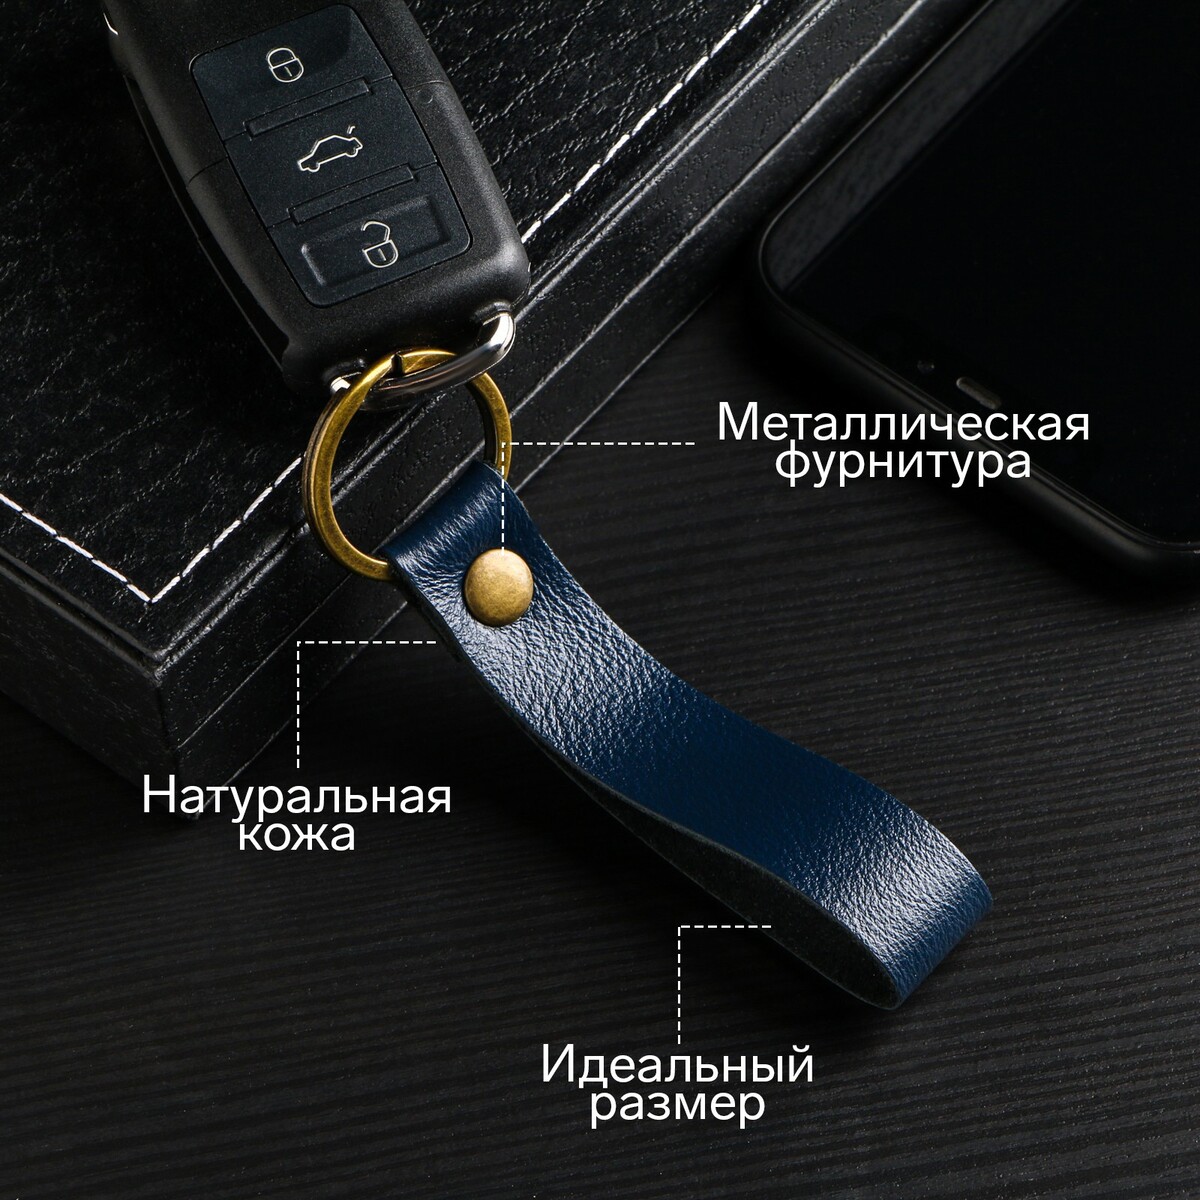 Брелок для автомобильного ключа, ремешок, натуральная кожа, синий часы наручные электронные с будильником d 5 8 см ремешок l 26 см 5 atm синий ремешок